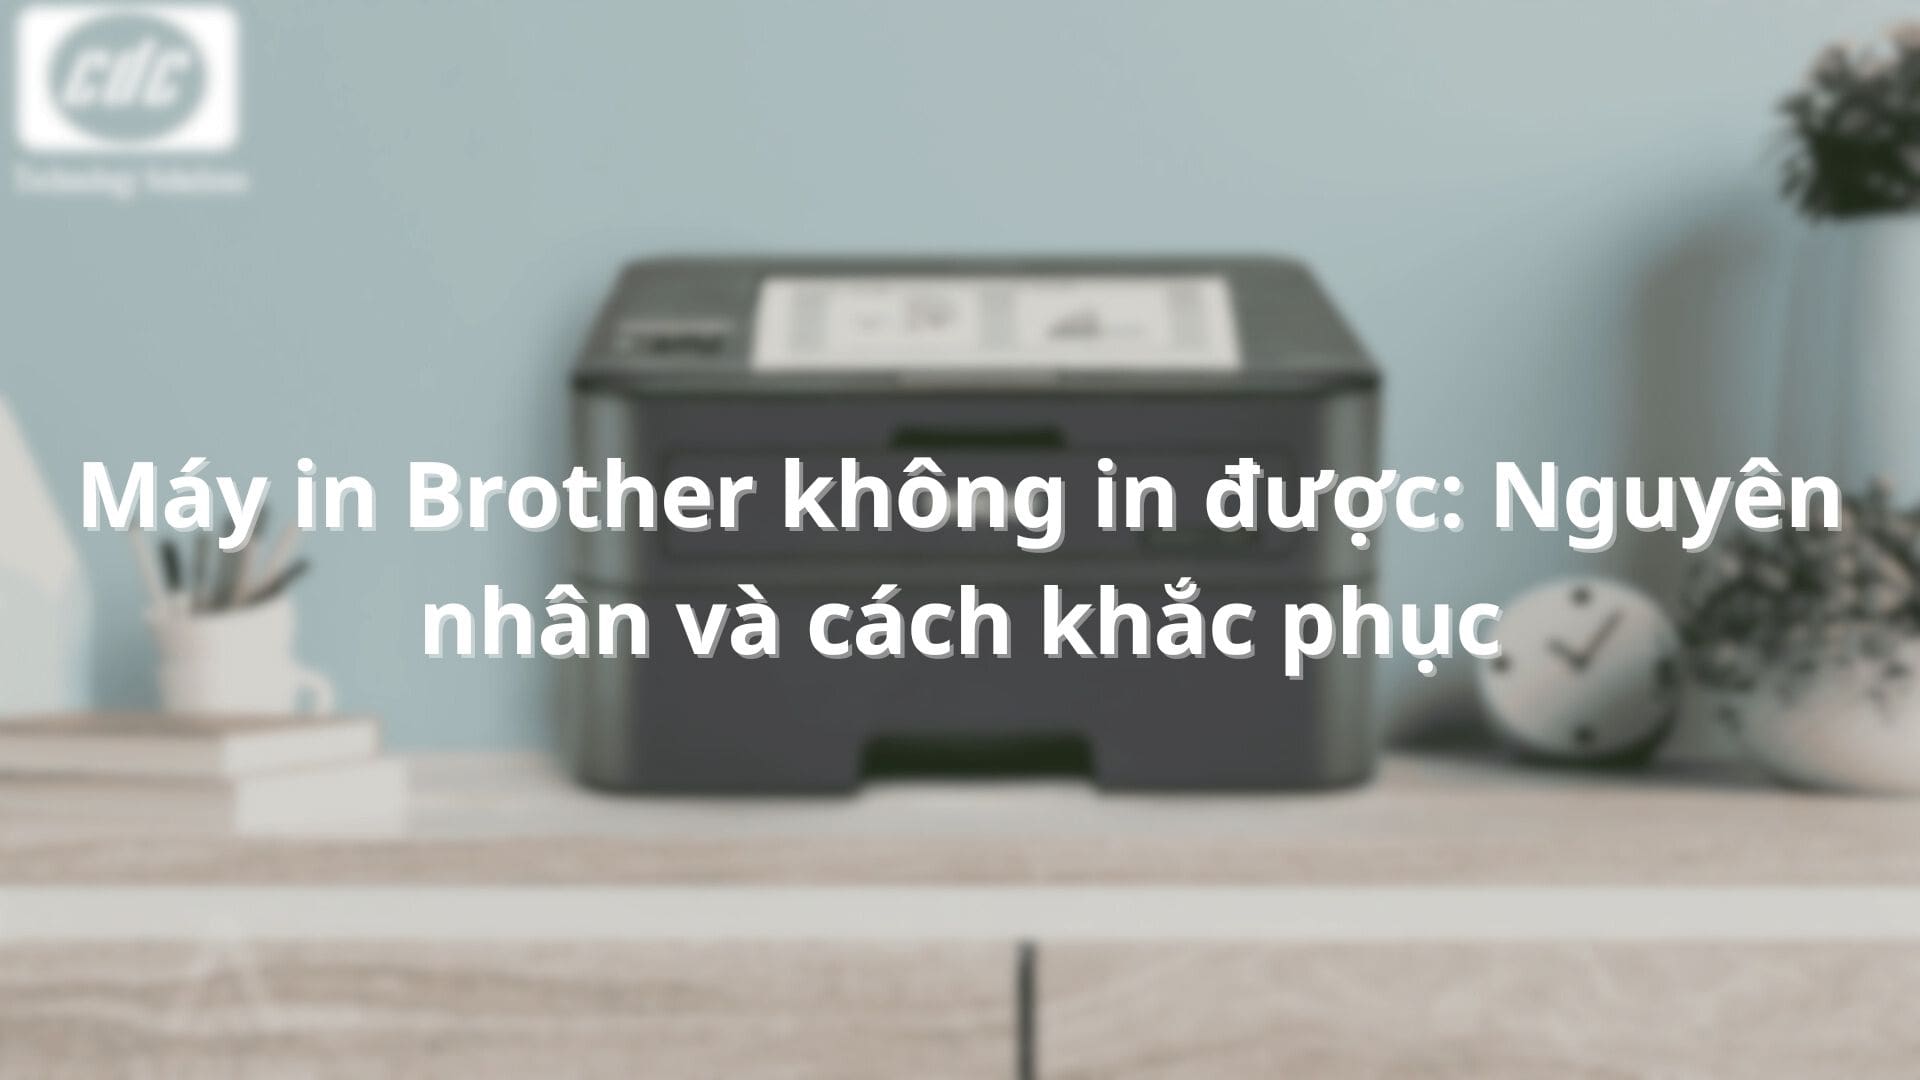 nguyen-nhan-va-cach-khac-phuc-tinh-trang-may-in-brother-khong-in-duoc-01